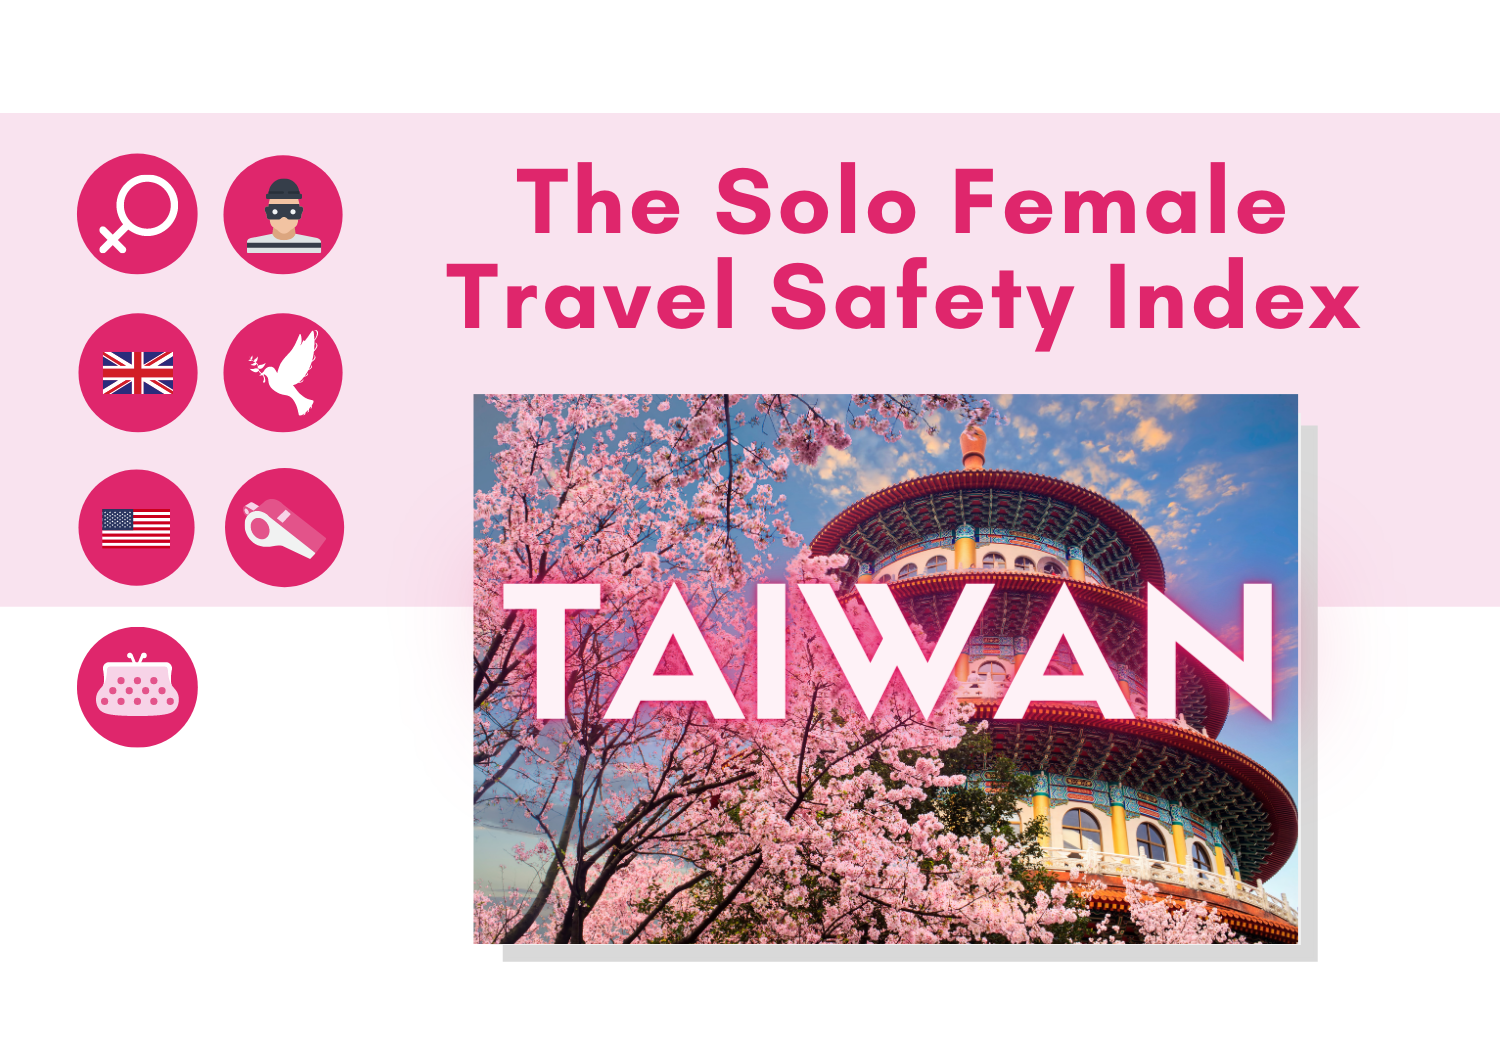 mfa taiwan travel advisory